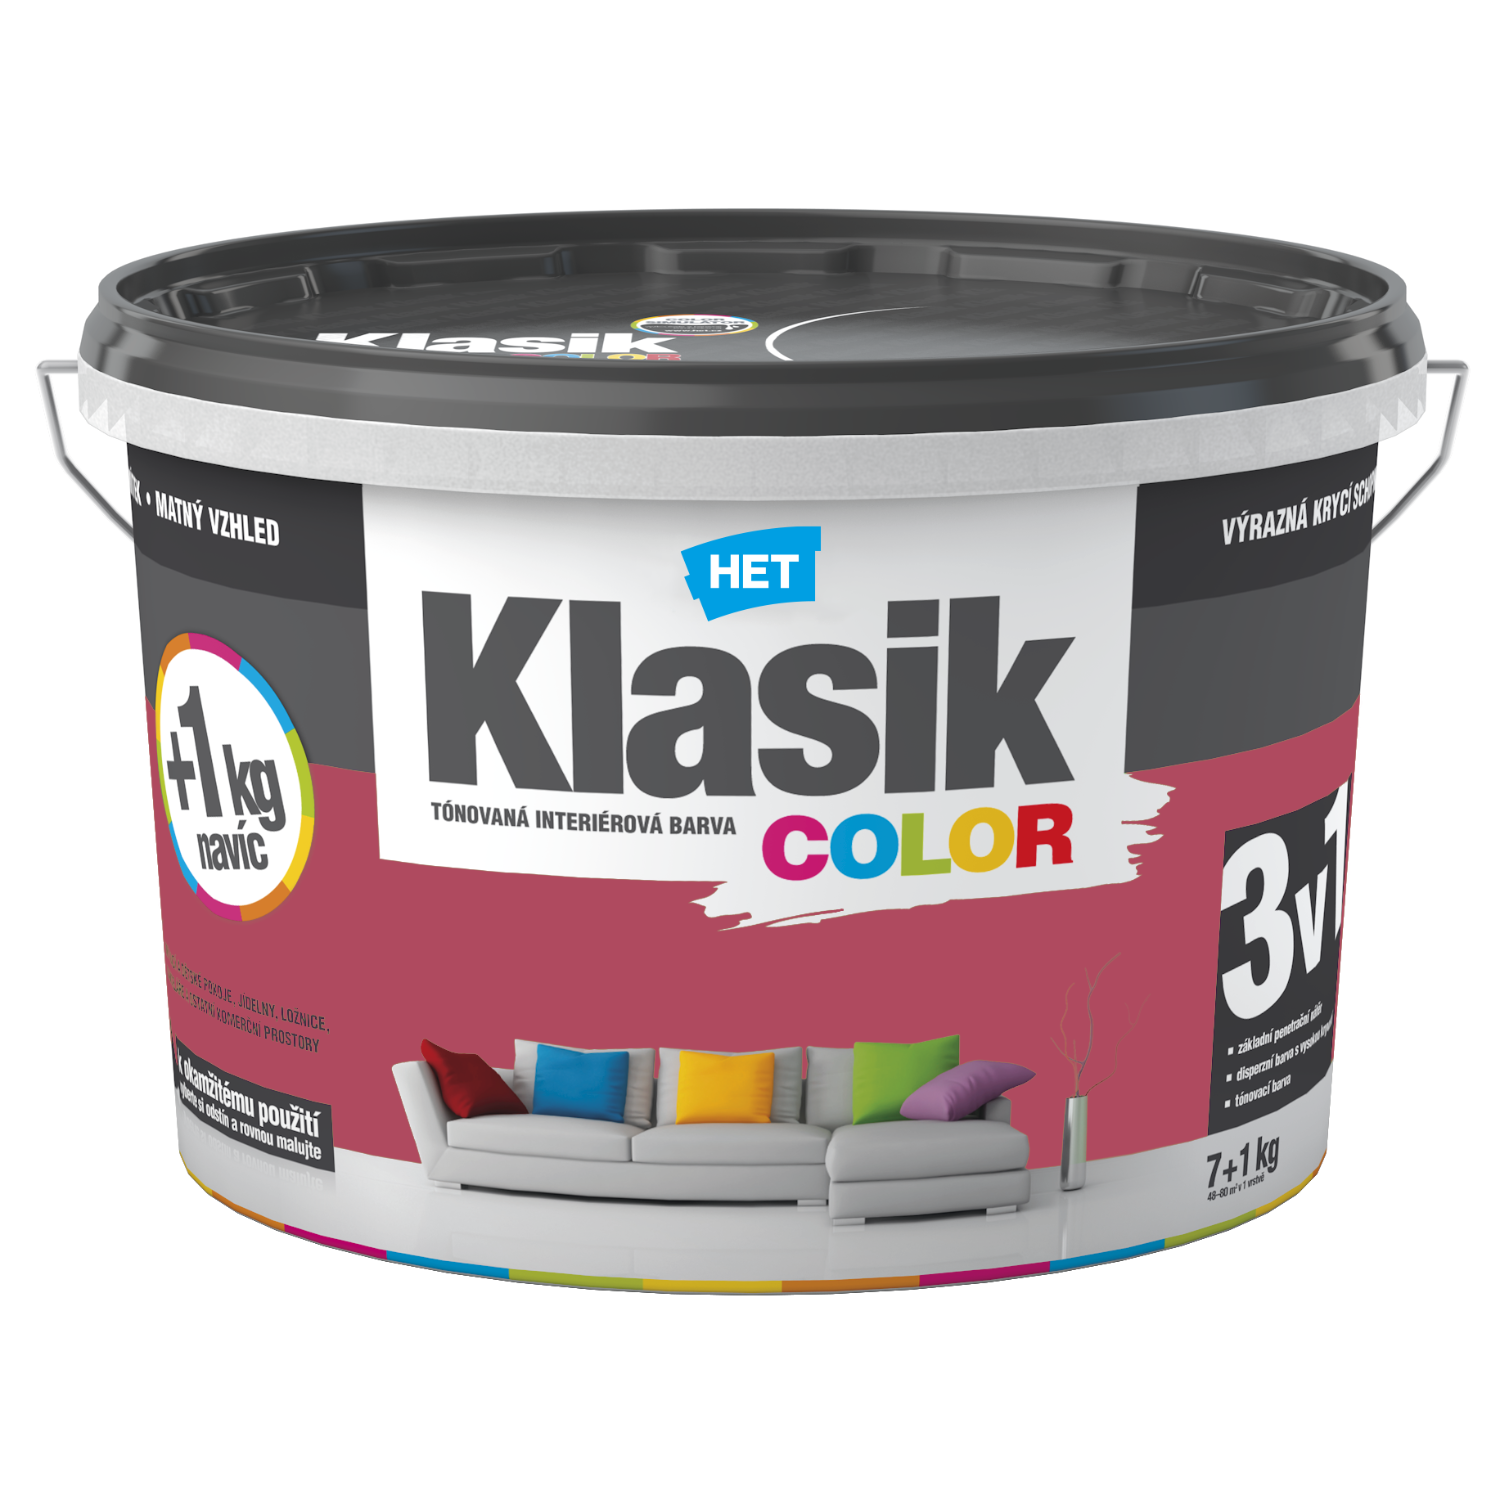 HET Klasik COLOR tónovaná interiérová akrylátová disperzná oteruvzdorná farba 7 kg + 1 kg zdarma, KC0837 - ružový